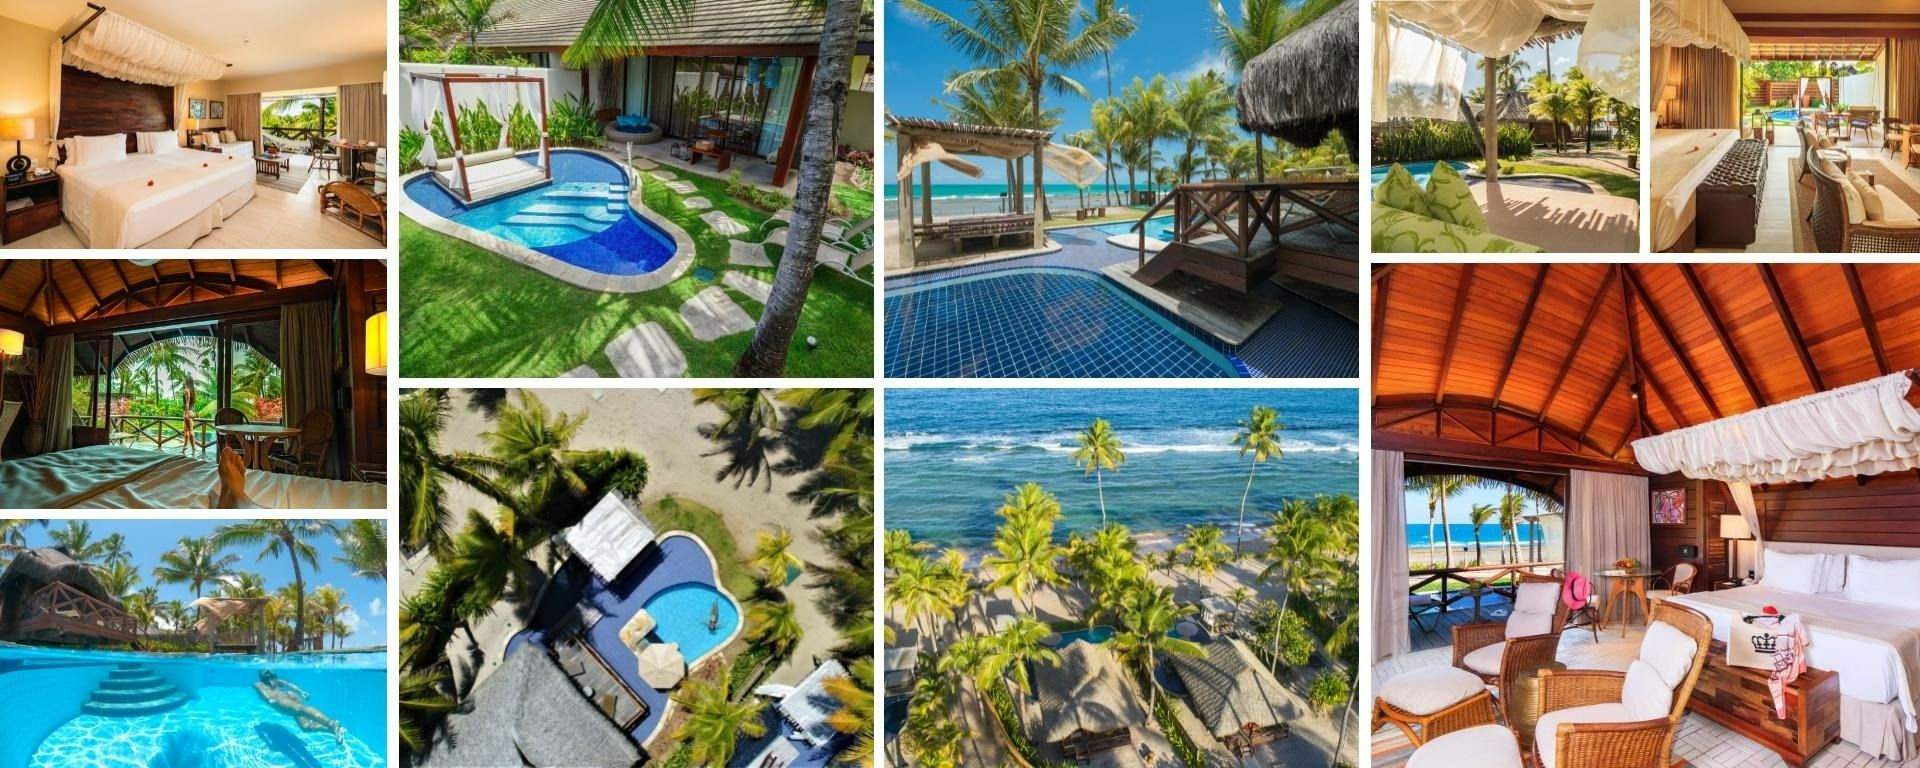 Bangalôs individuais com piscinas privativas. Resort com café da manha e jantar incluídos em praia do nordeste.